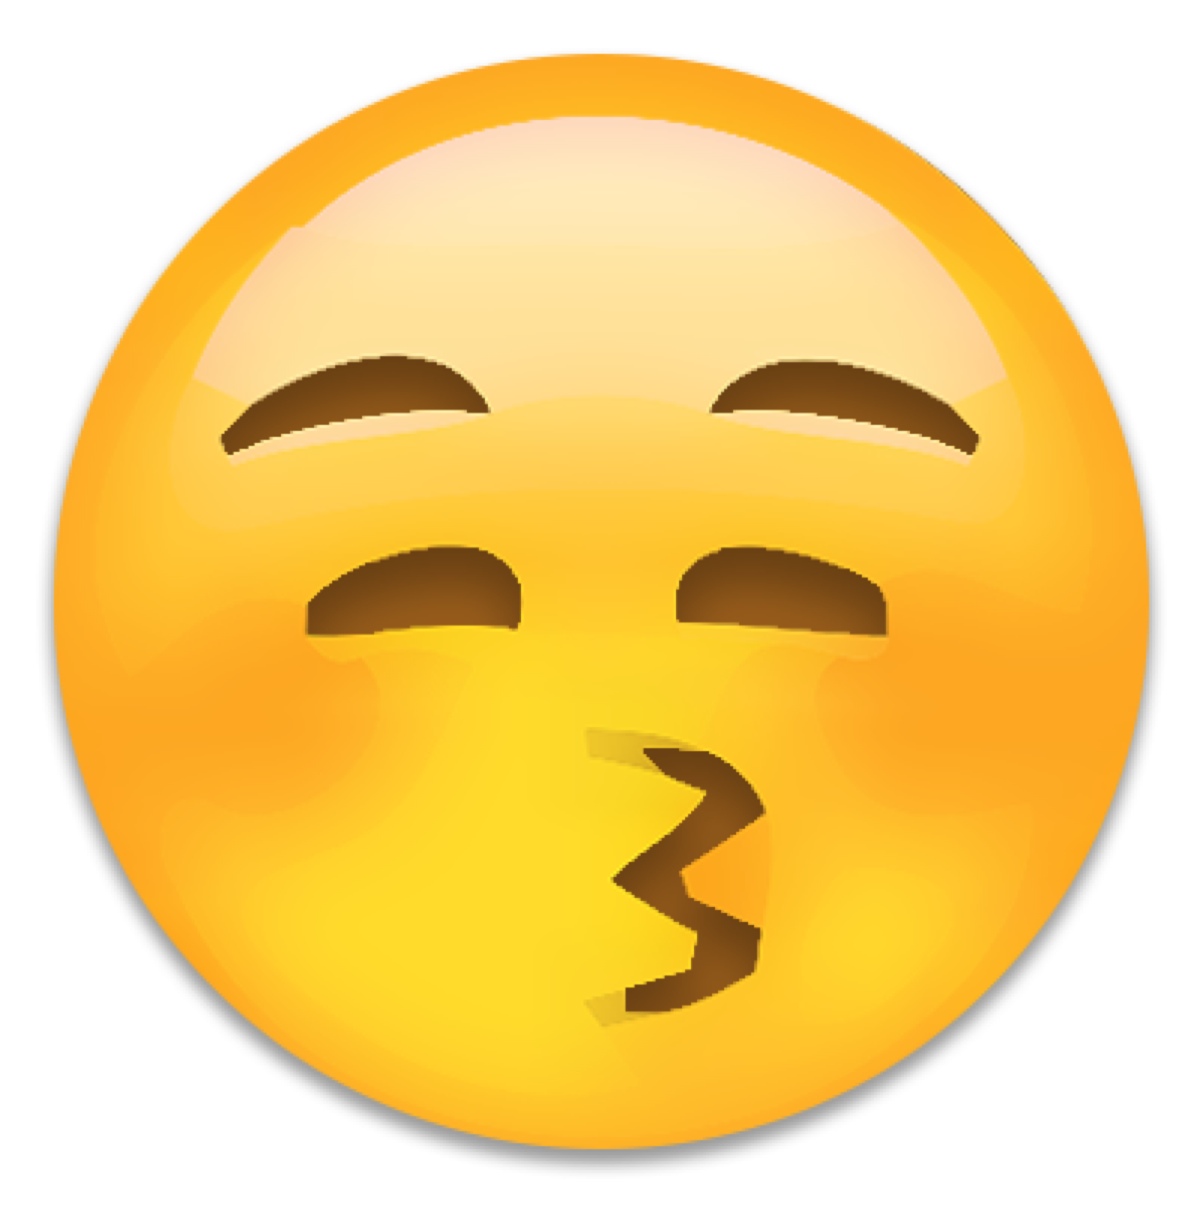 抖音emoji表情大图图片